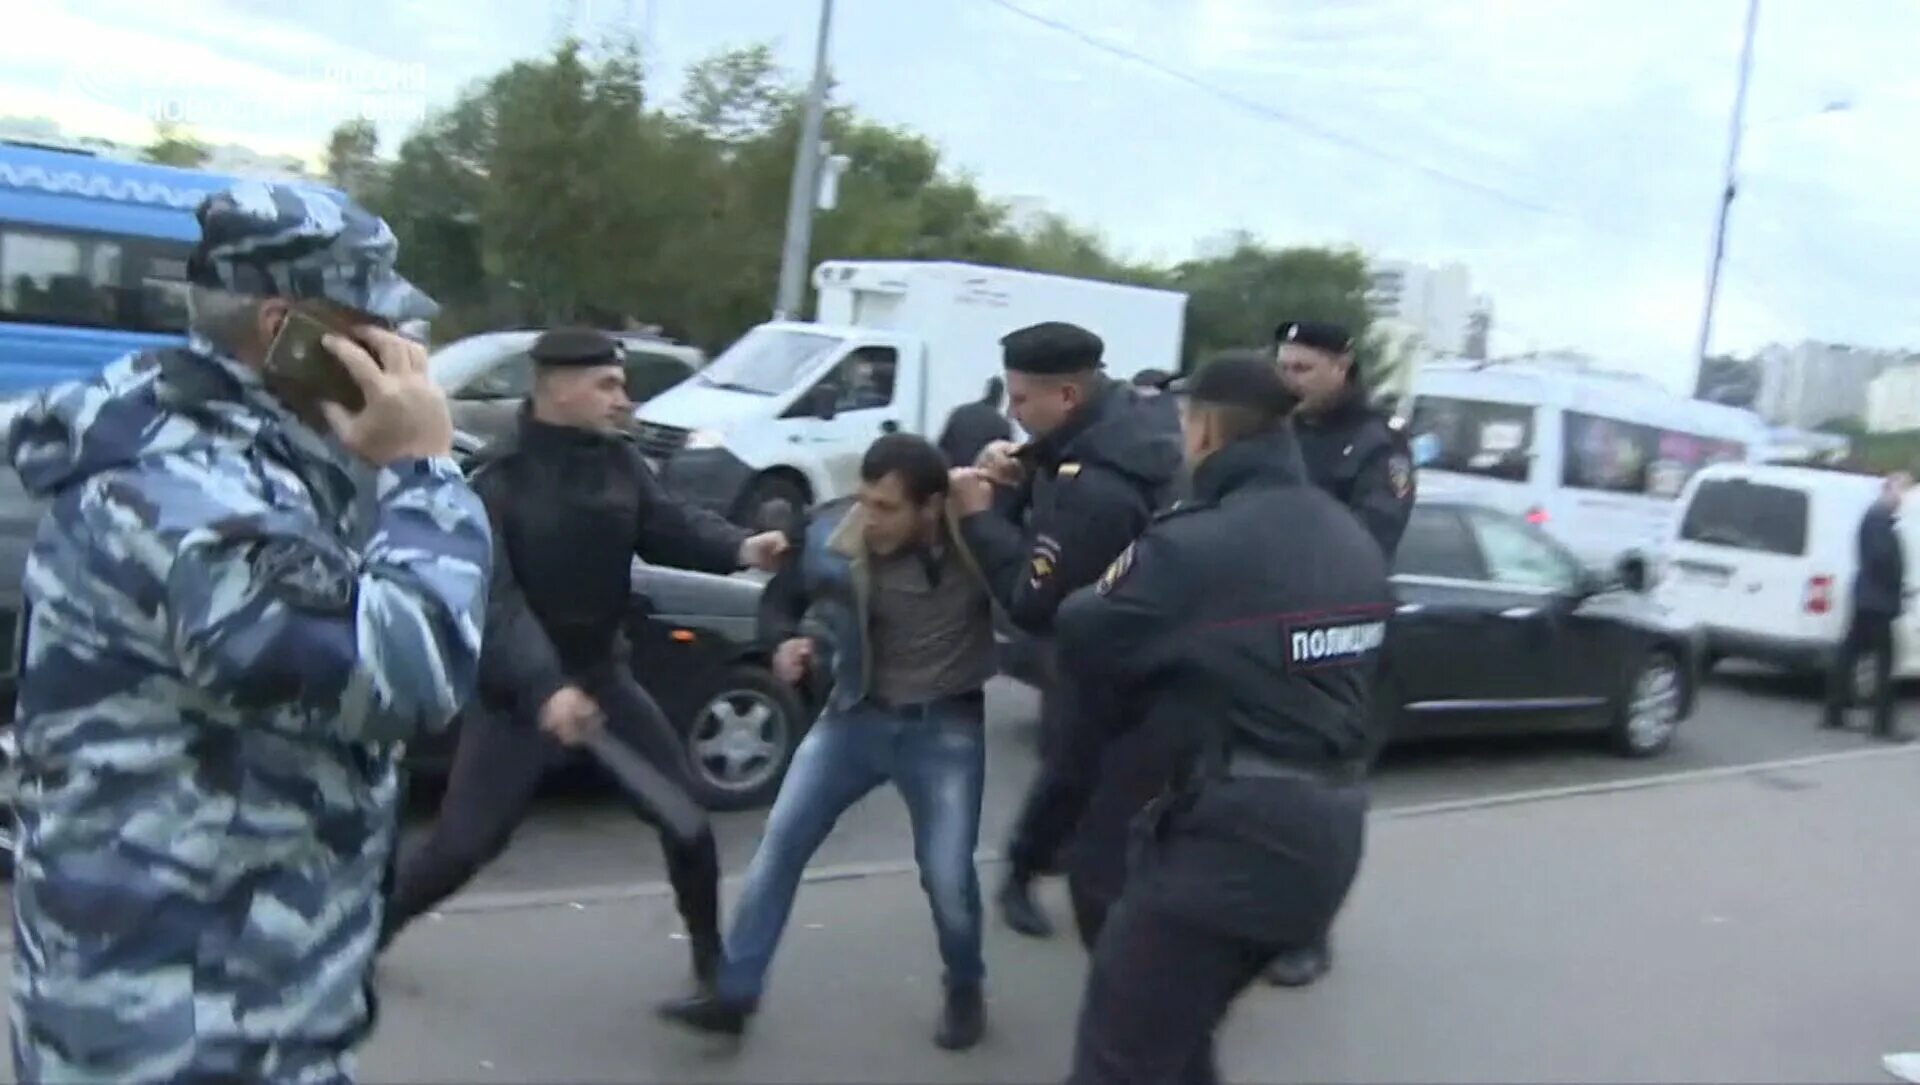 Таджики убегают. Облава на мигрантов. Задержание мигрантов в Москве. Облава на мигрантов в Москве. Полиция против мигрантов.